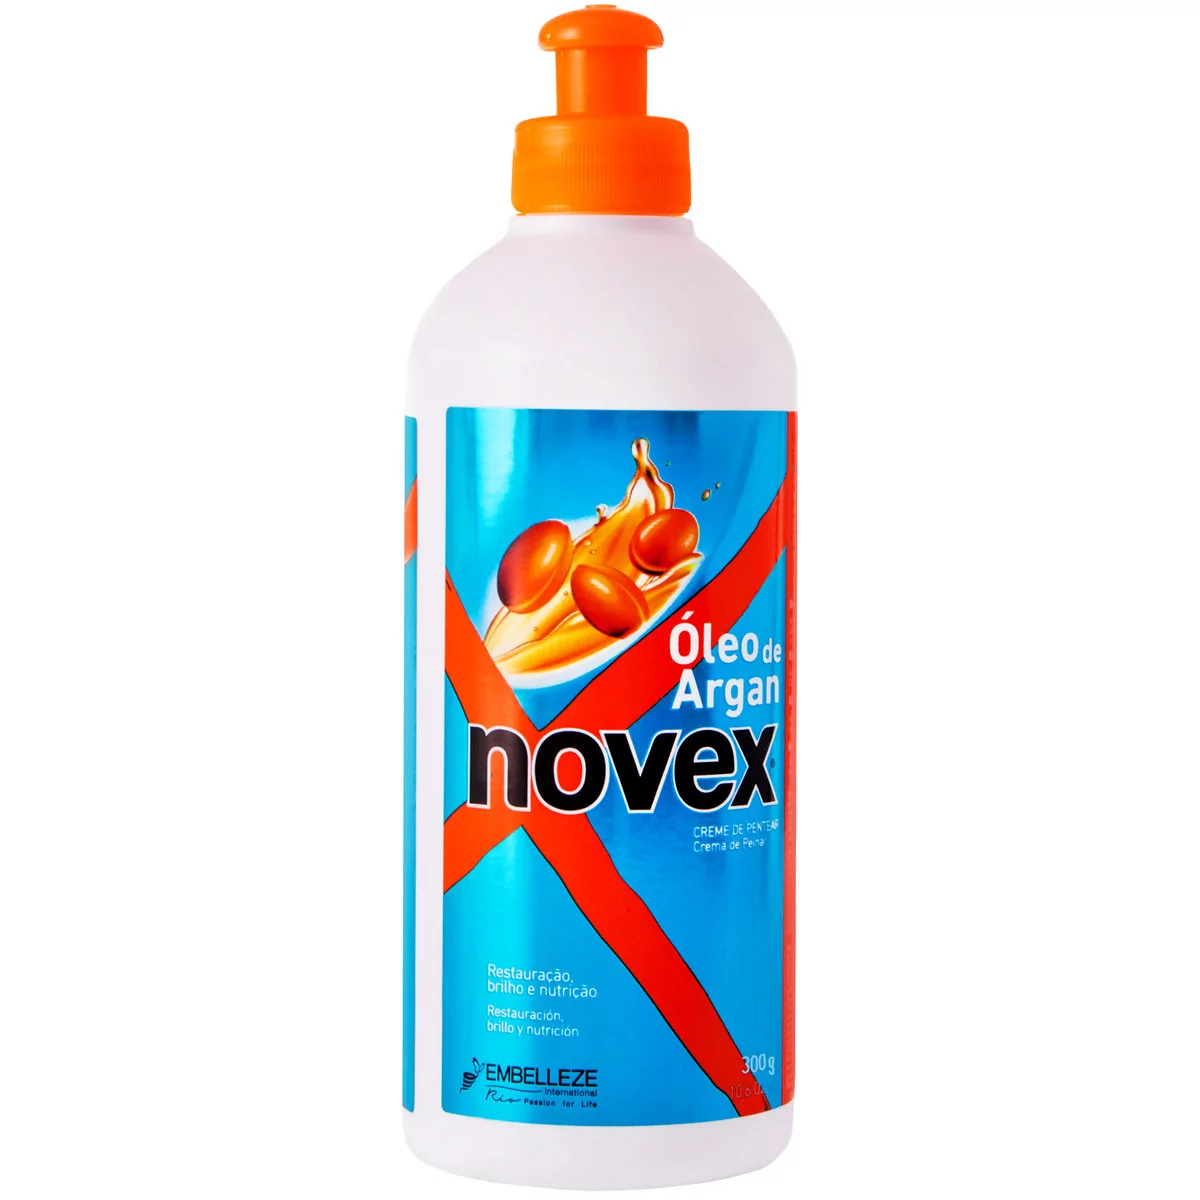 Novex, Argan Oil Leave-In, Regenerująca odżywka bez spłukiwania z olejkiem arganowym,  300 g